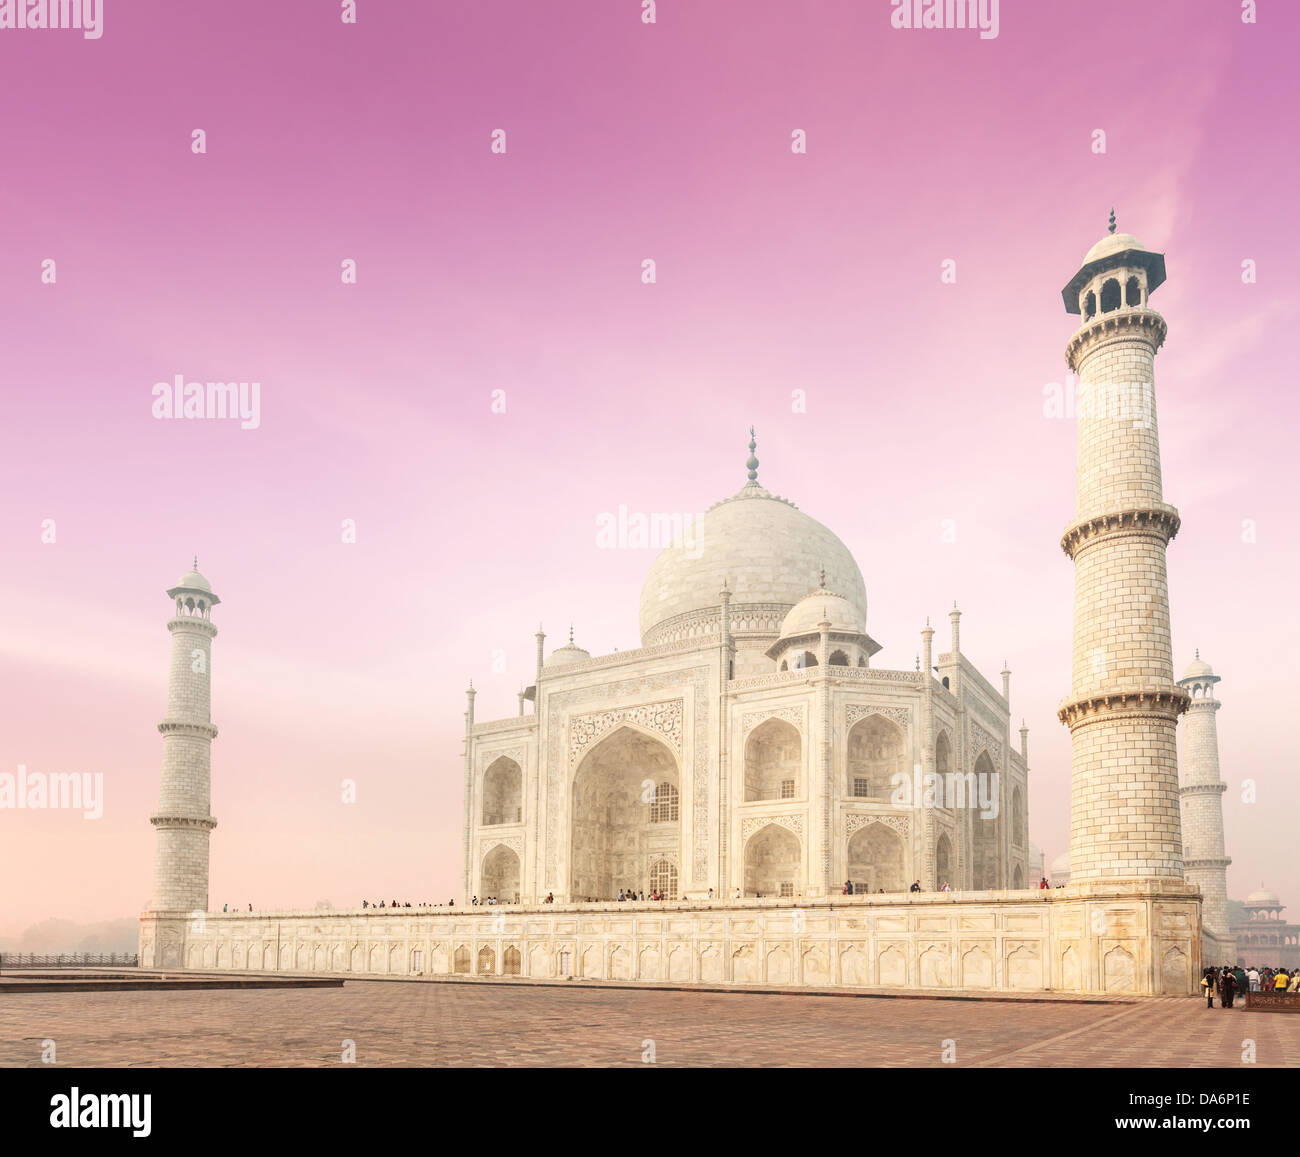 Taj Mahal on sunrise. Indian Symbol - India travel background. Agra, India Stock Photo